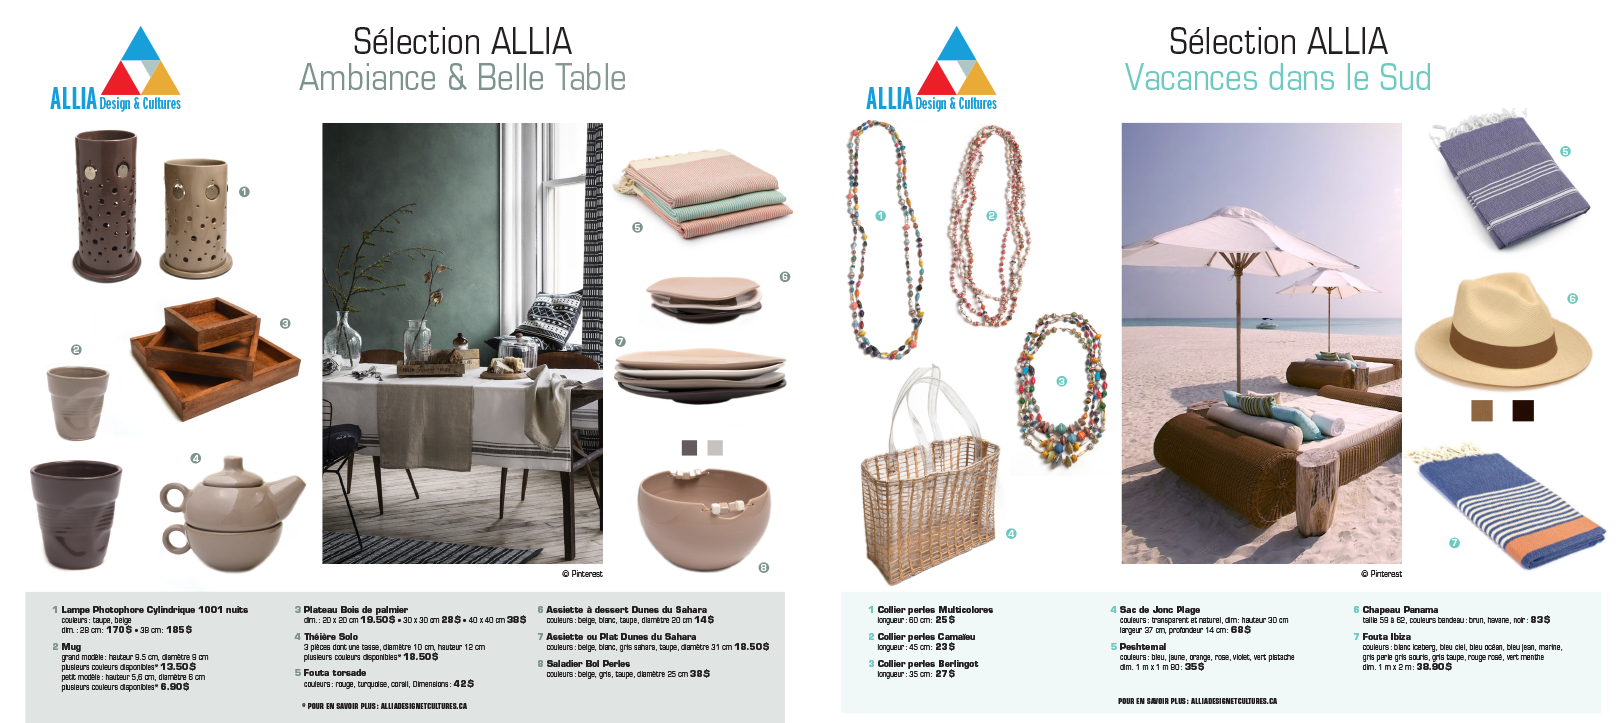 Agitatrice de solutions - Projet Allia Design & Cultures - Branding - Web - Planches tendances - Presse Magazine